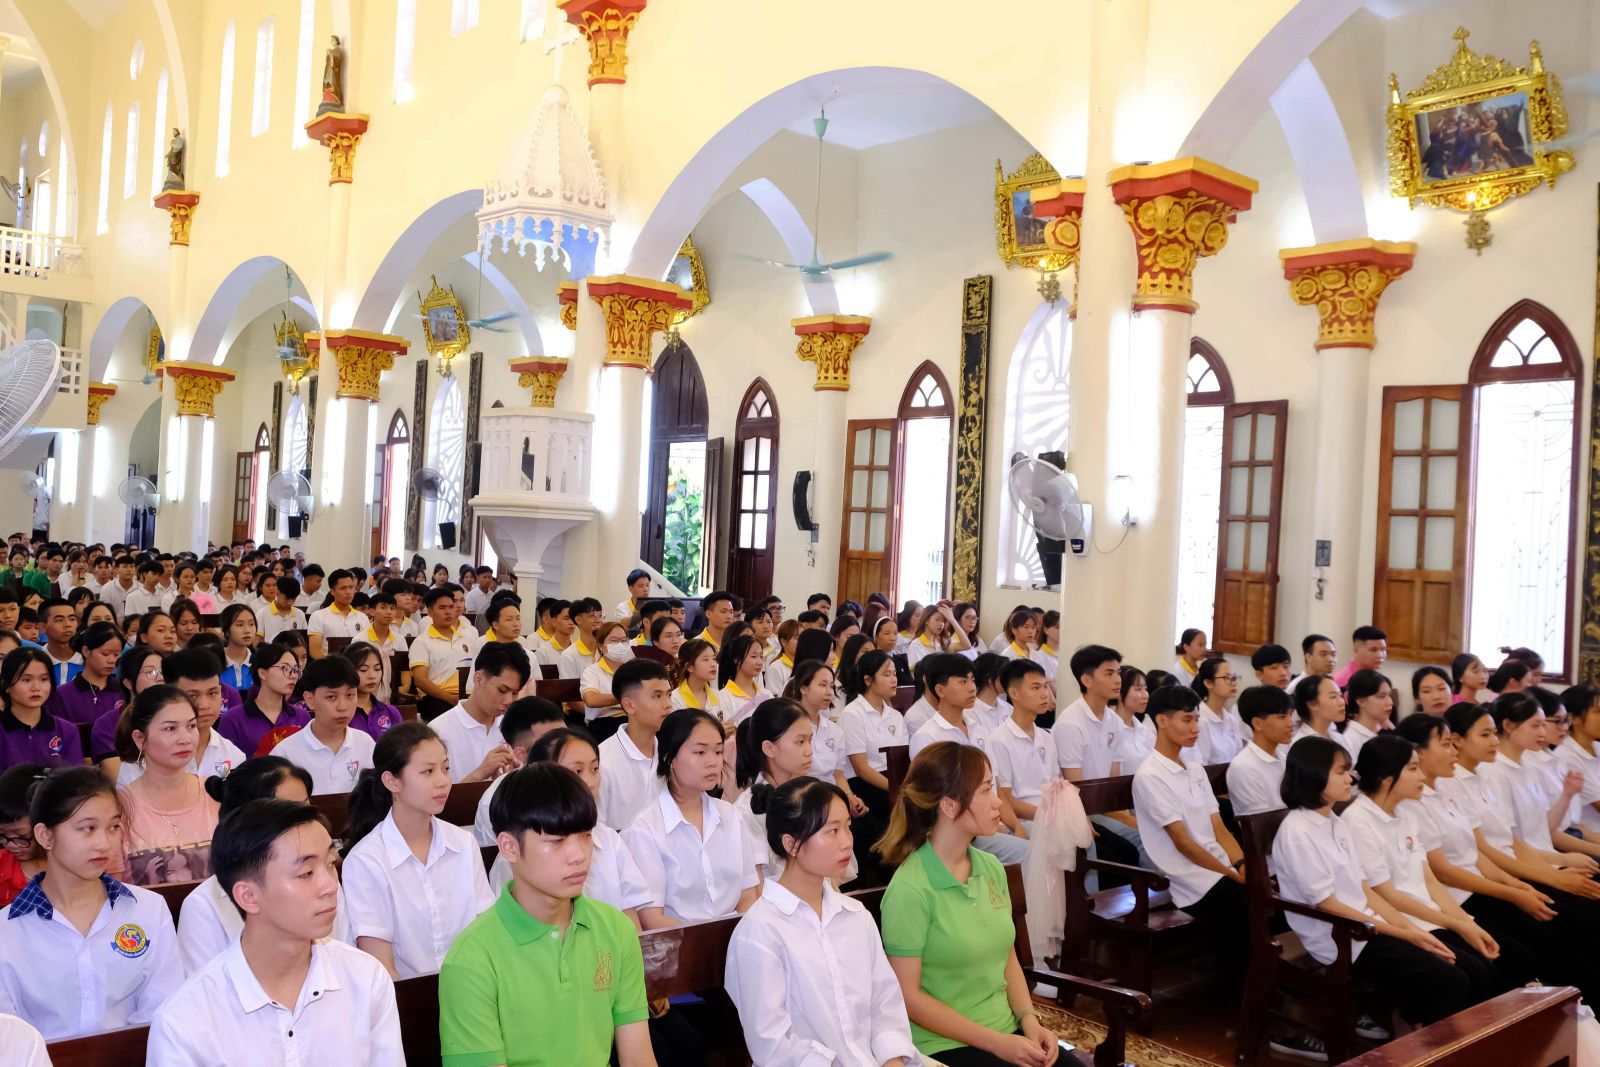 Cha Giuse Tạ Minh Quý chia sẻ với người trẻ về chủ đề : “Giới trẻ cùng nhau hiệp hành”